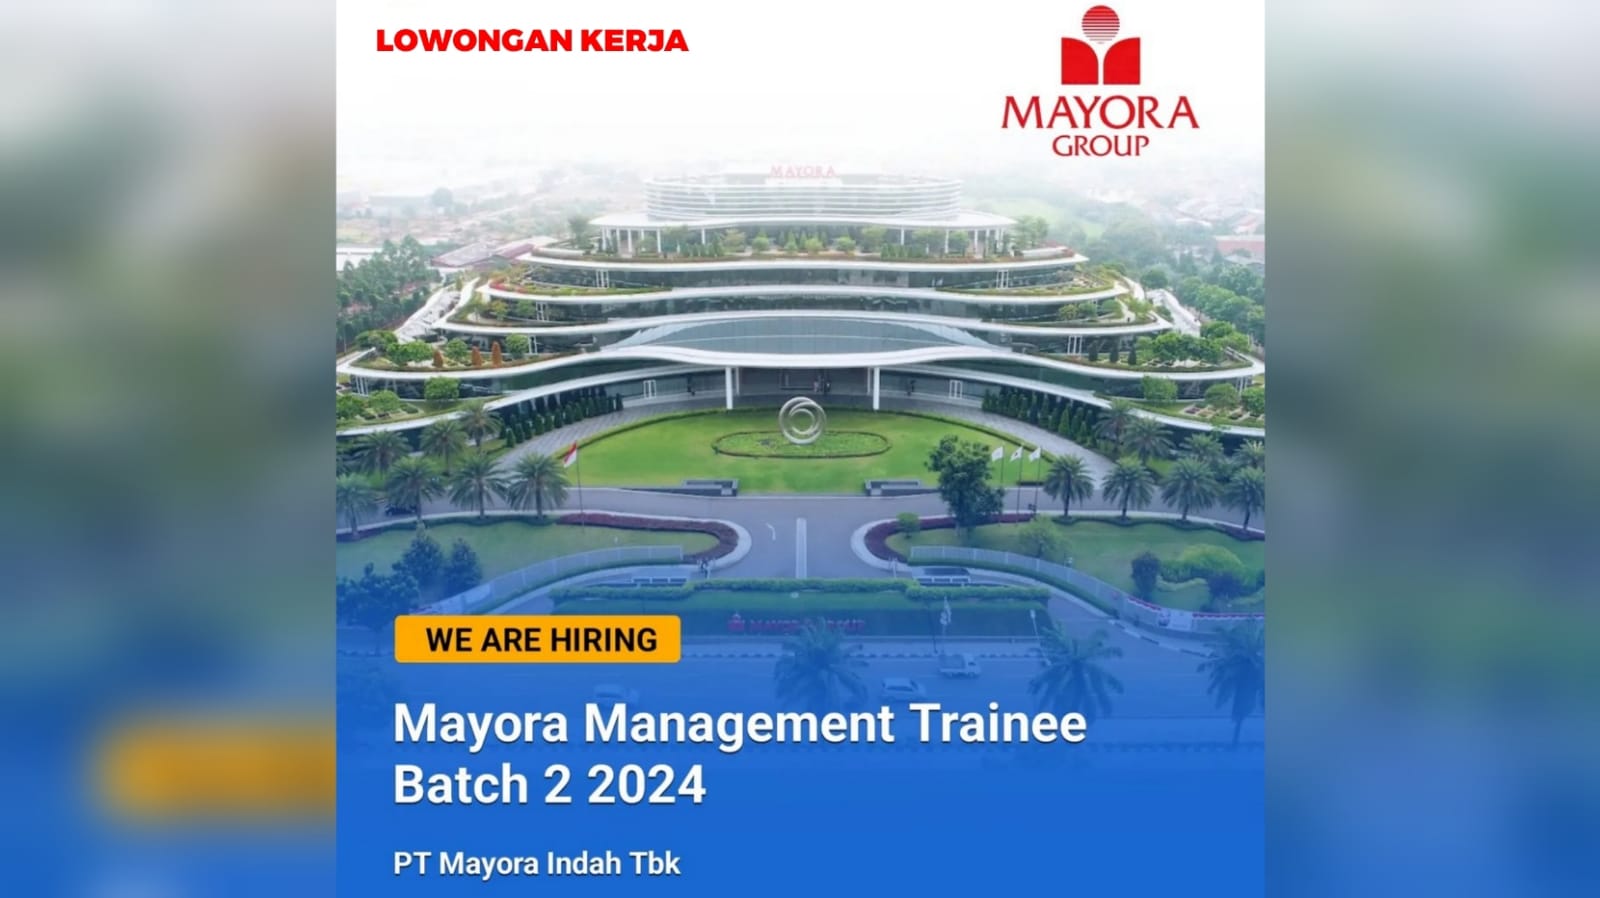 Lowongan Kerja Terbaru PT Mayora Indah Tbk Mayora Management Trainee Batch 2 2024 Tersedia 6 Posisi Jabatan